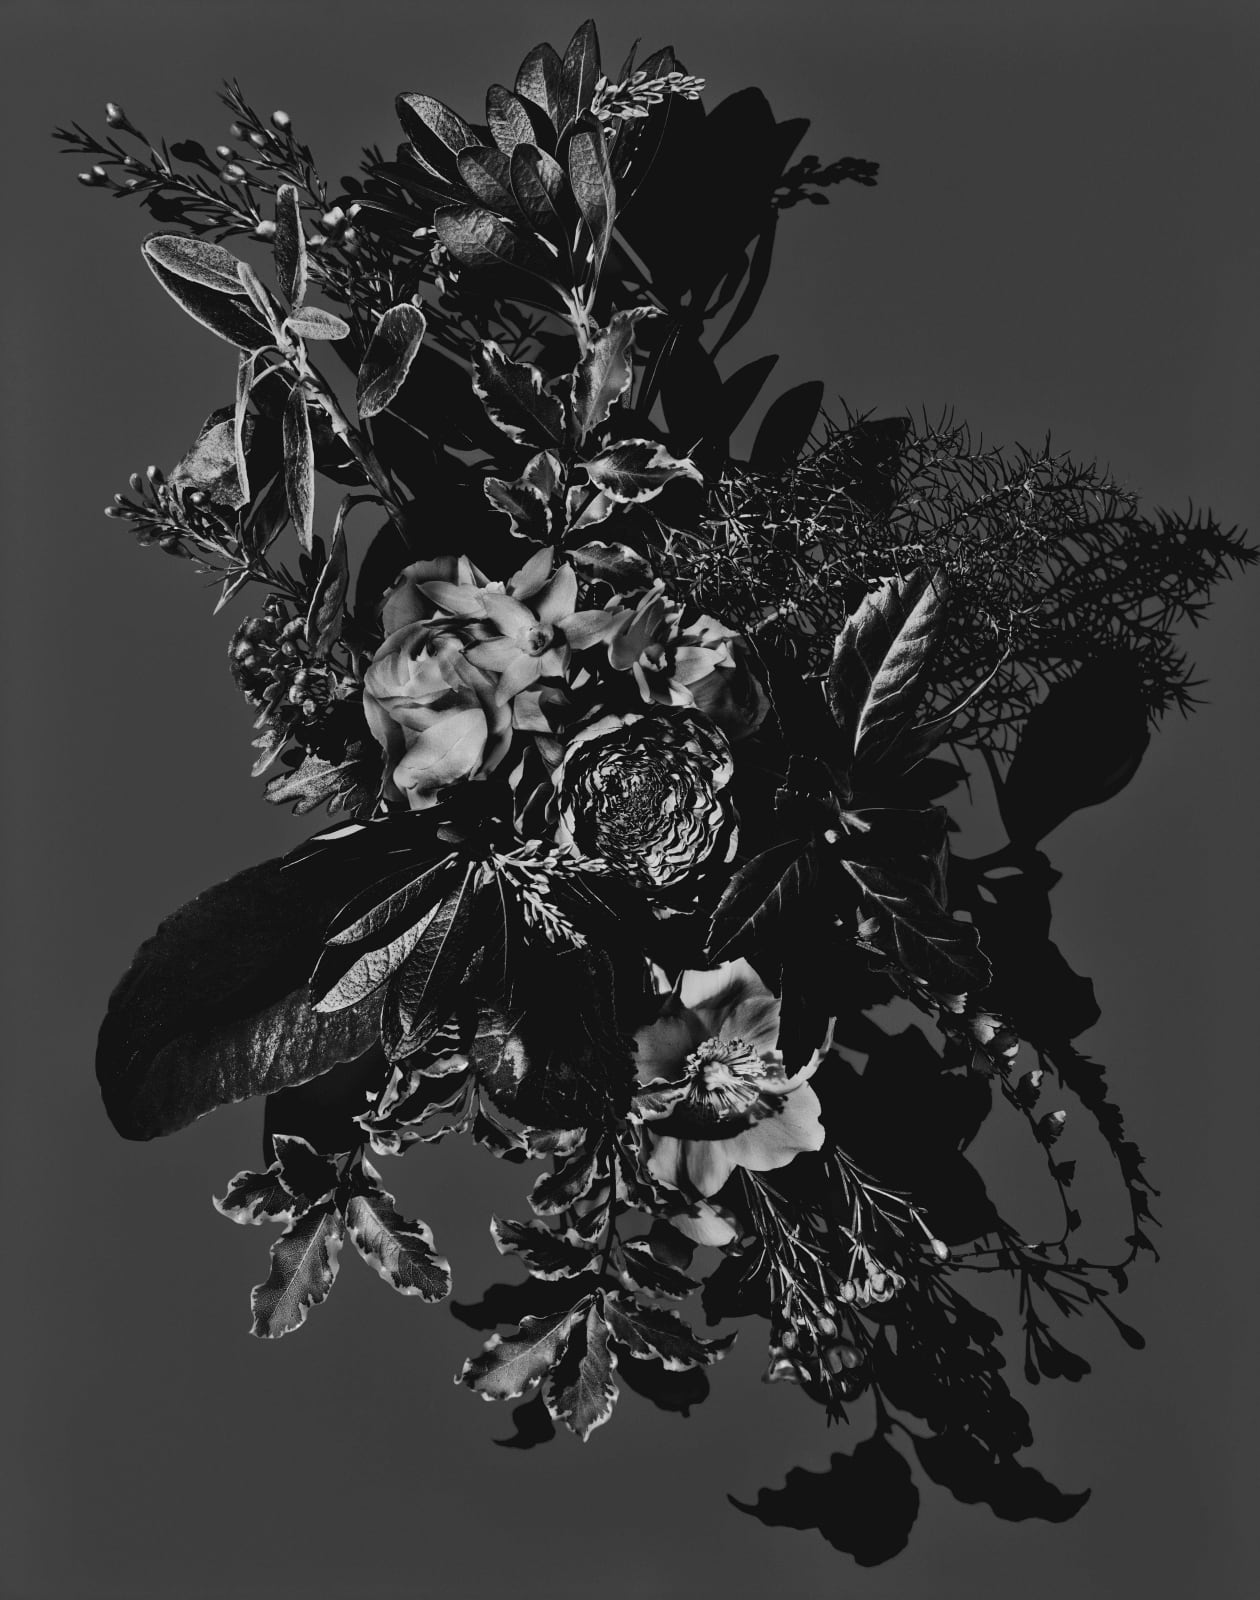 Valerie Belin untitled black and white still life of floral arrangement